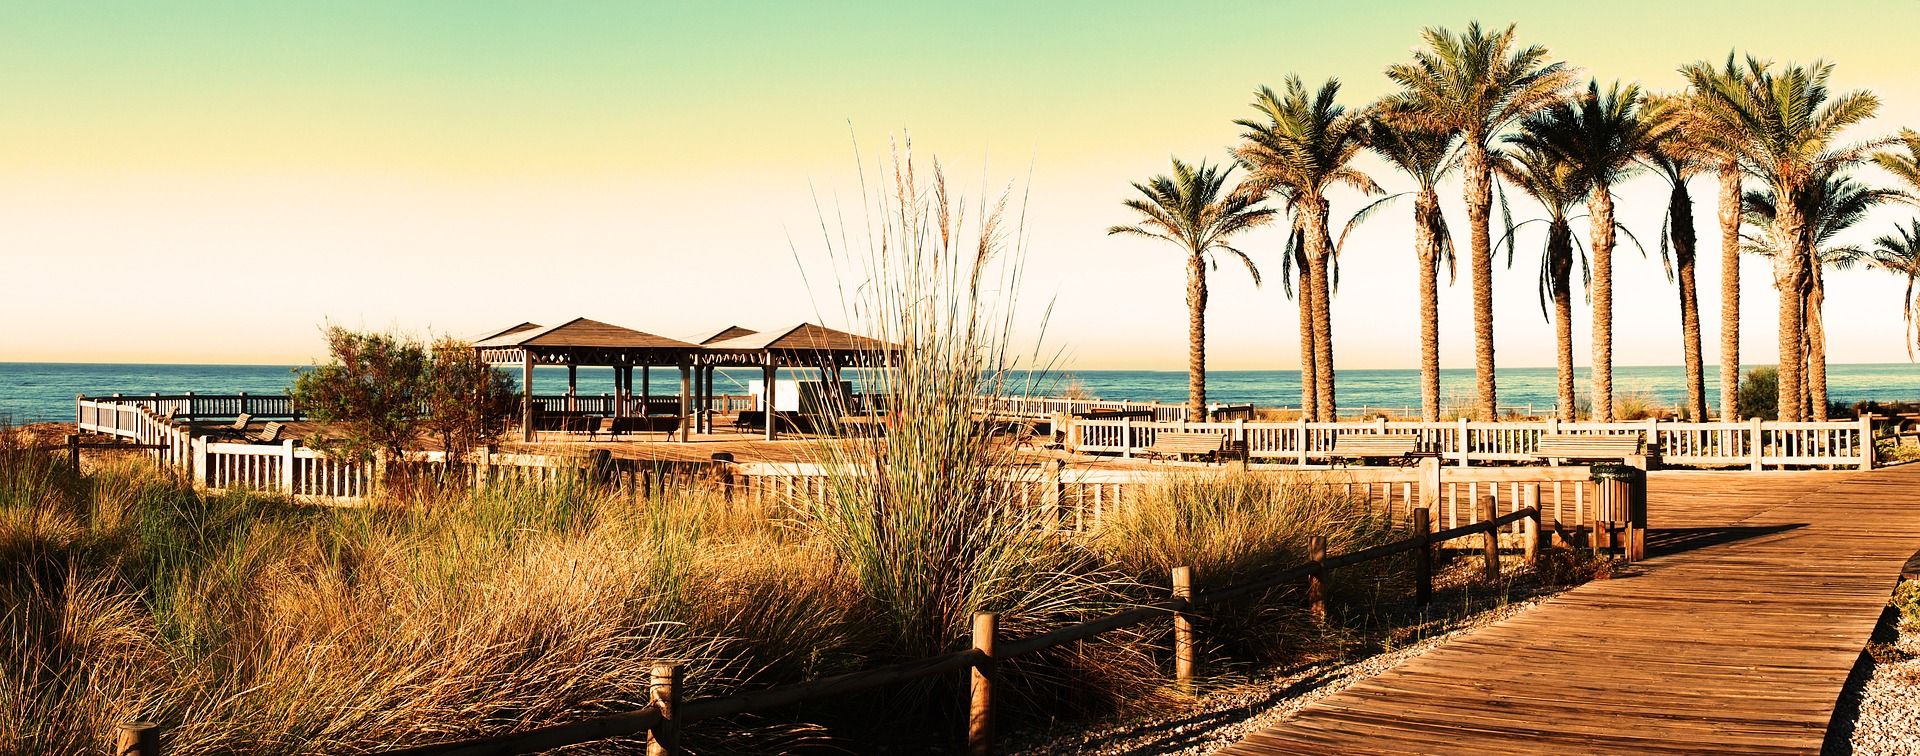 Imagen de archivo de Toyo (Almería) - Pixabay / Antonio Jose Cespedes